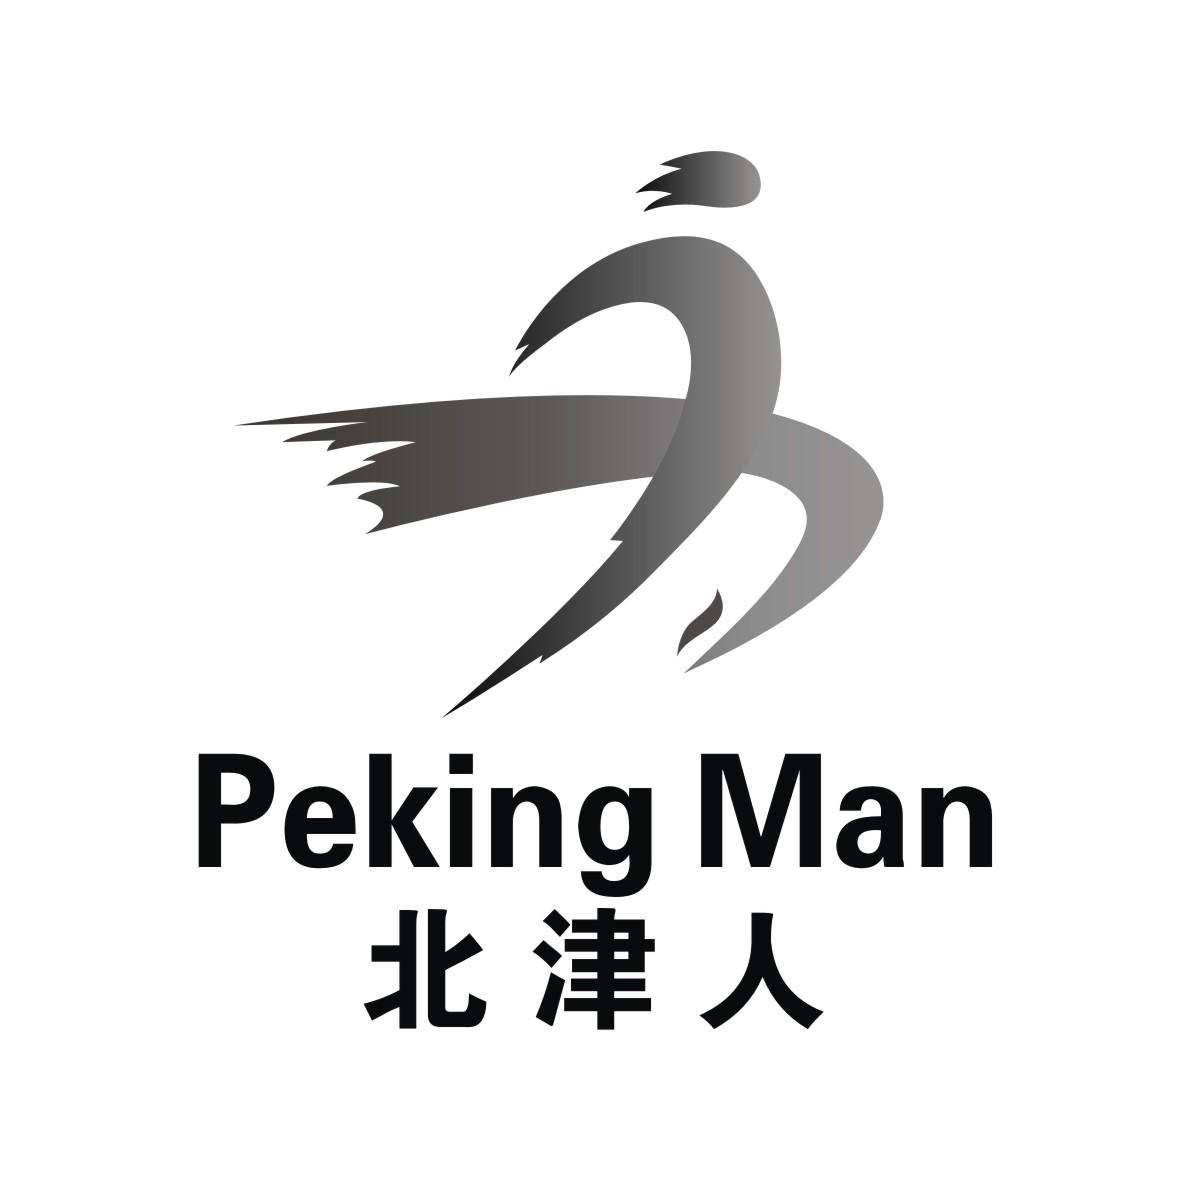 北津人 peking man